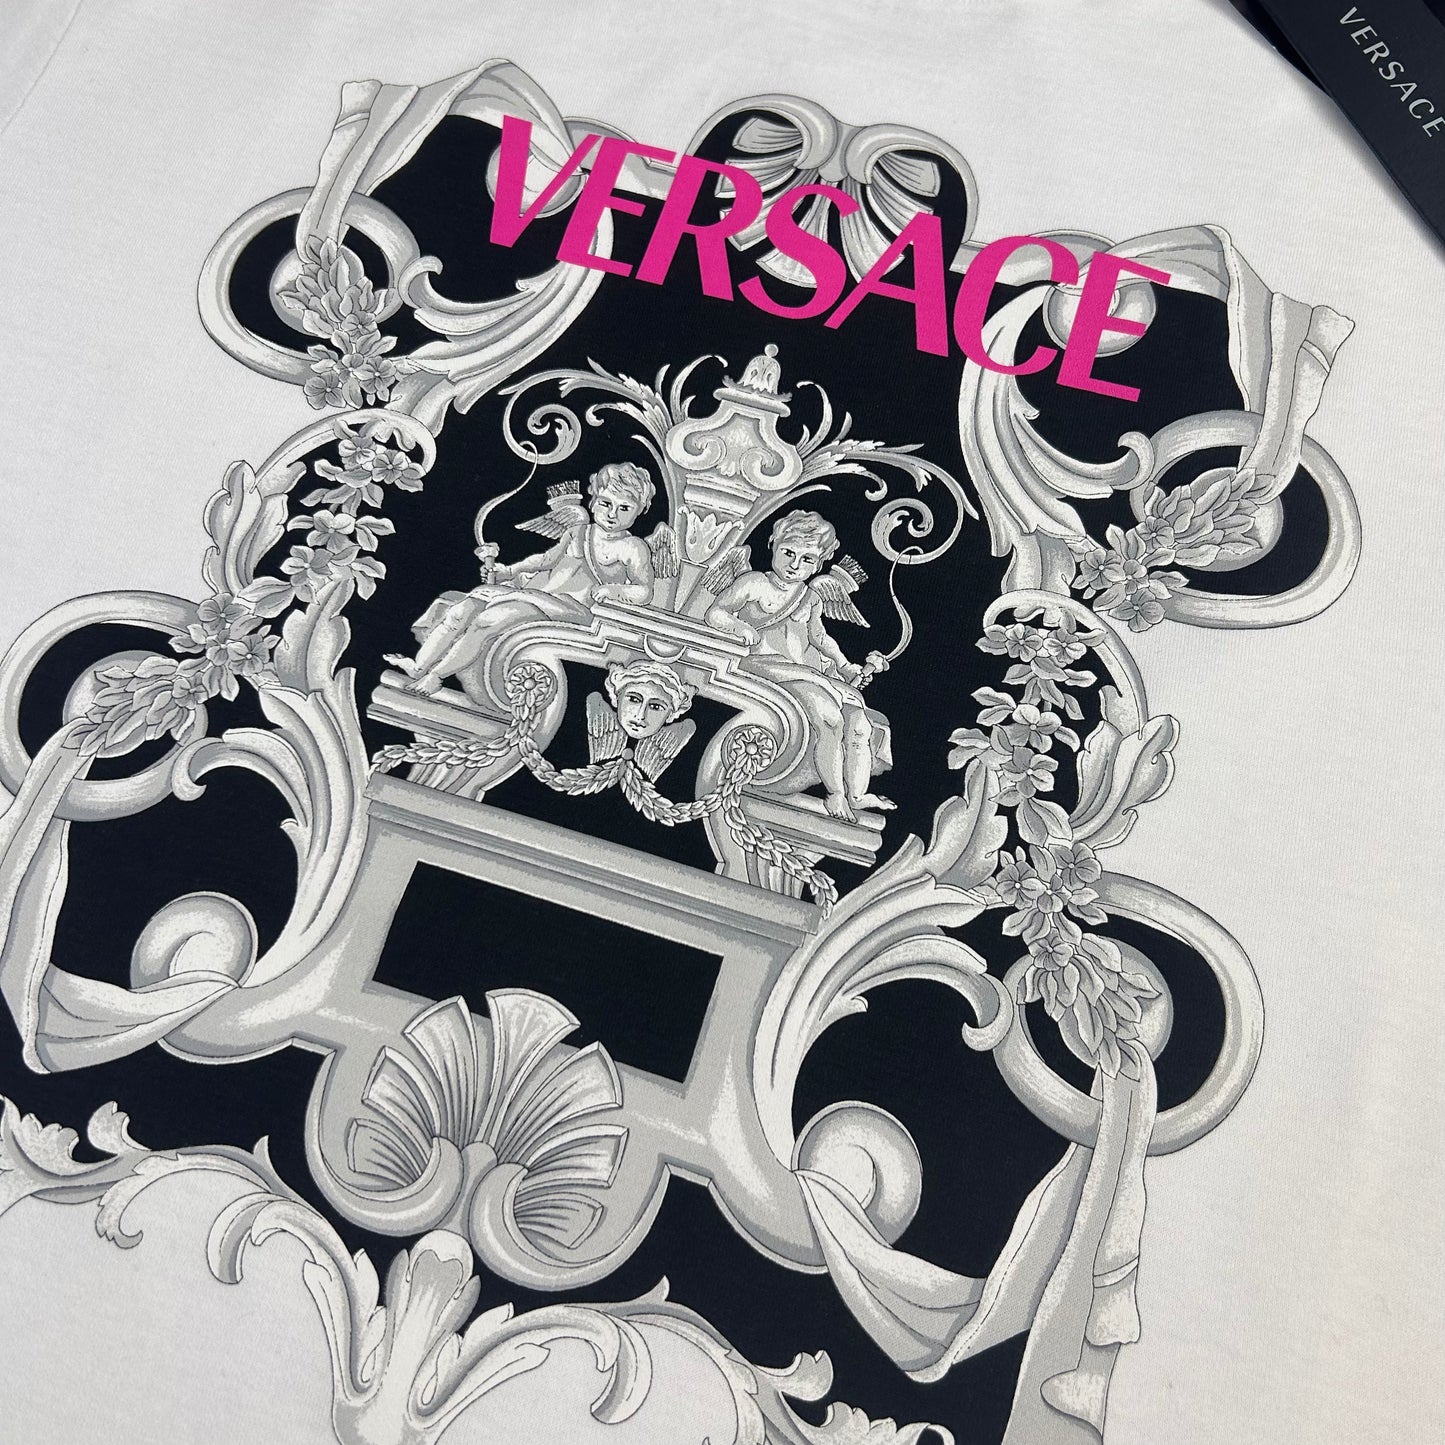 Versace Men’s White T-shirt - Small